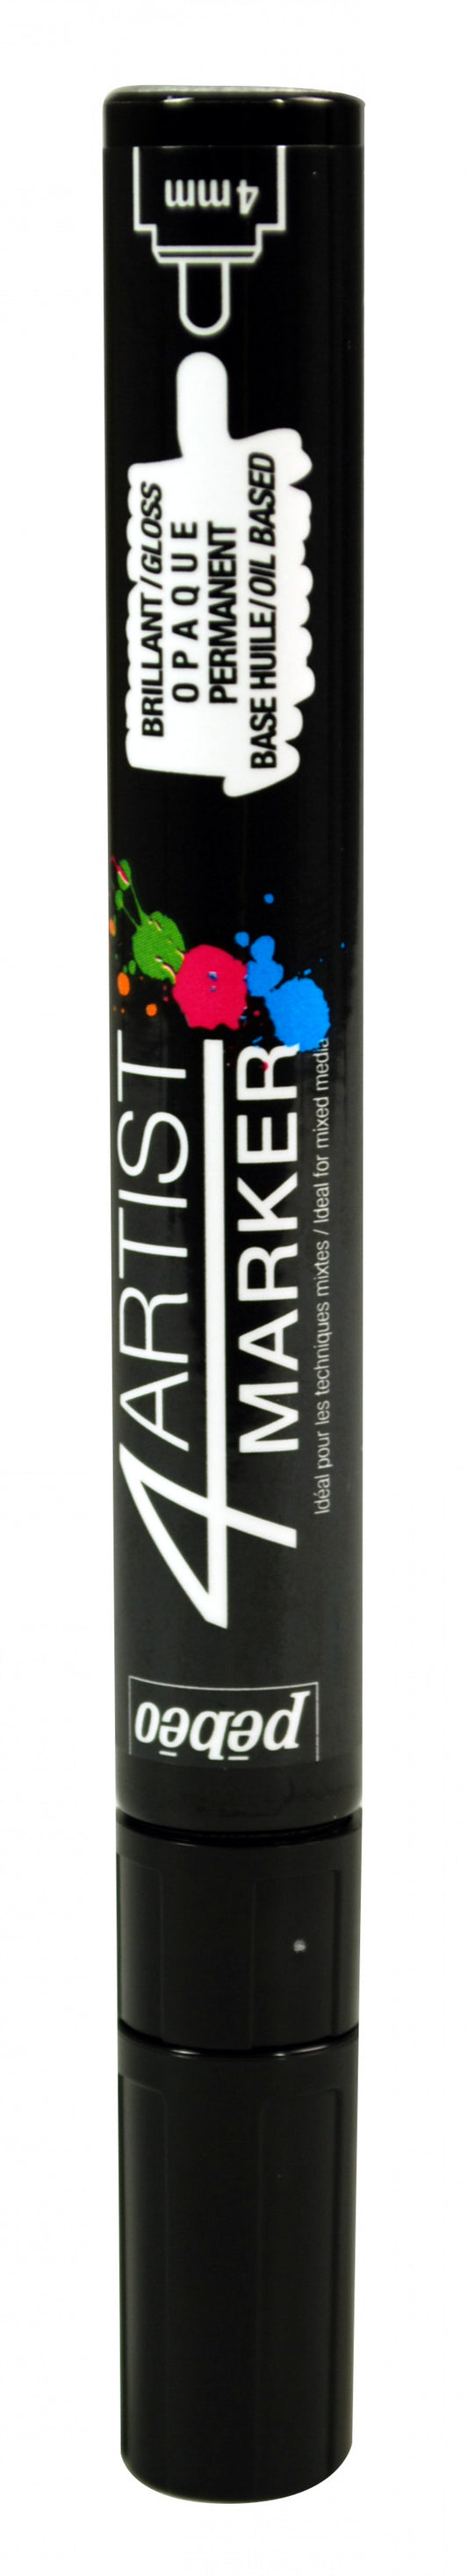 4Artist marker tip 4mm Black